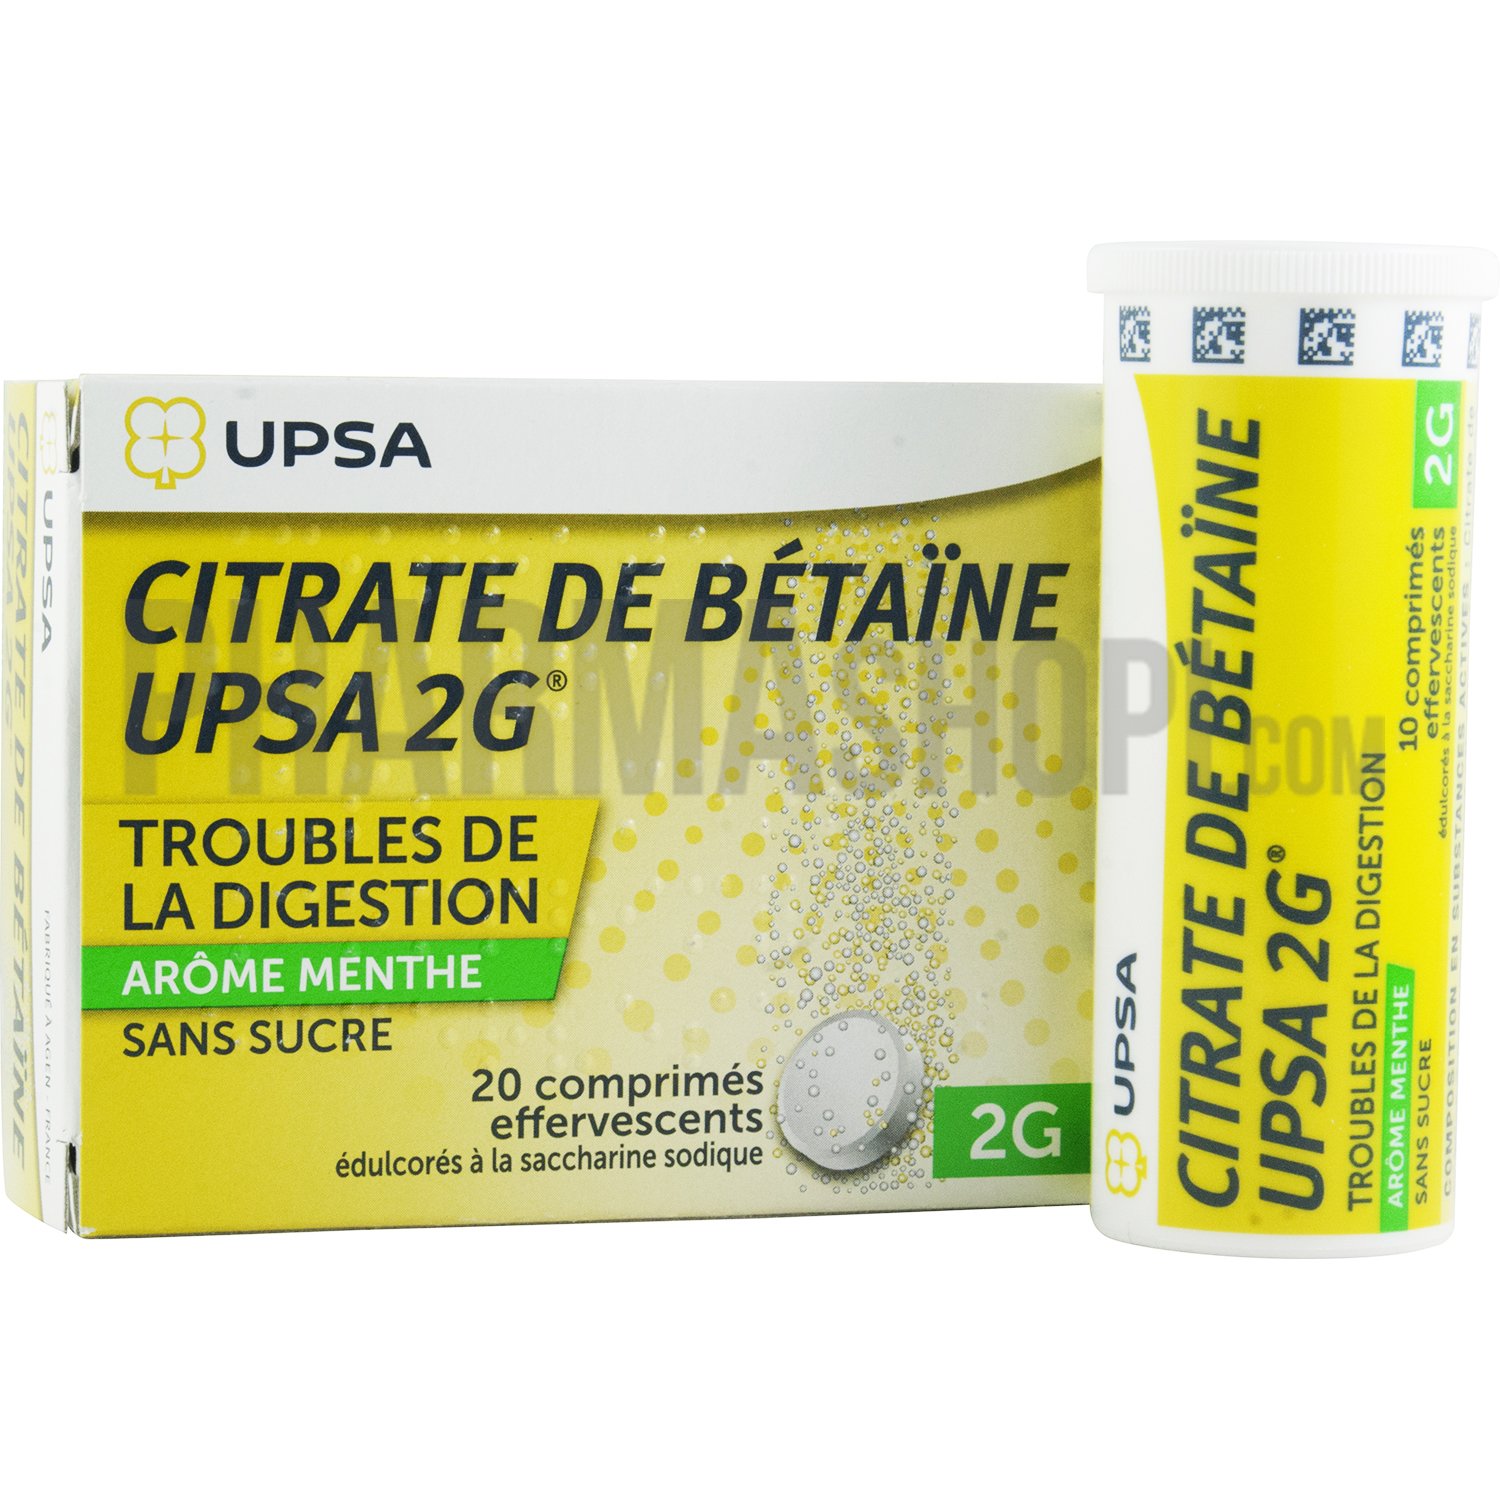 Citrate de bétaine 2g menthe sans sucre UPSA - boite de 20 comprimés effervescents